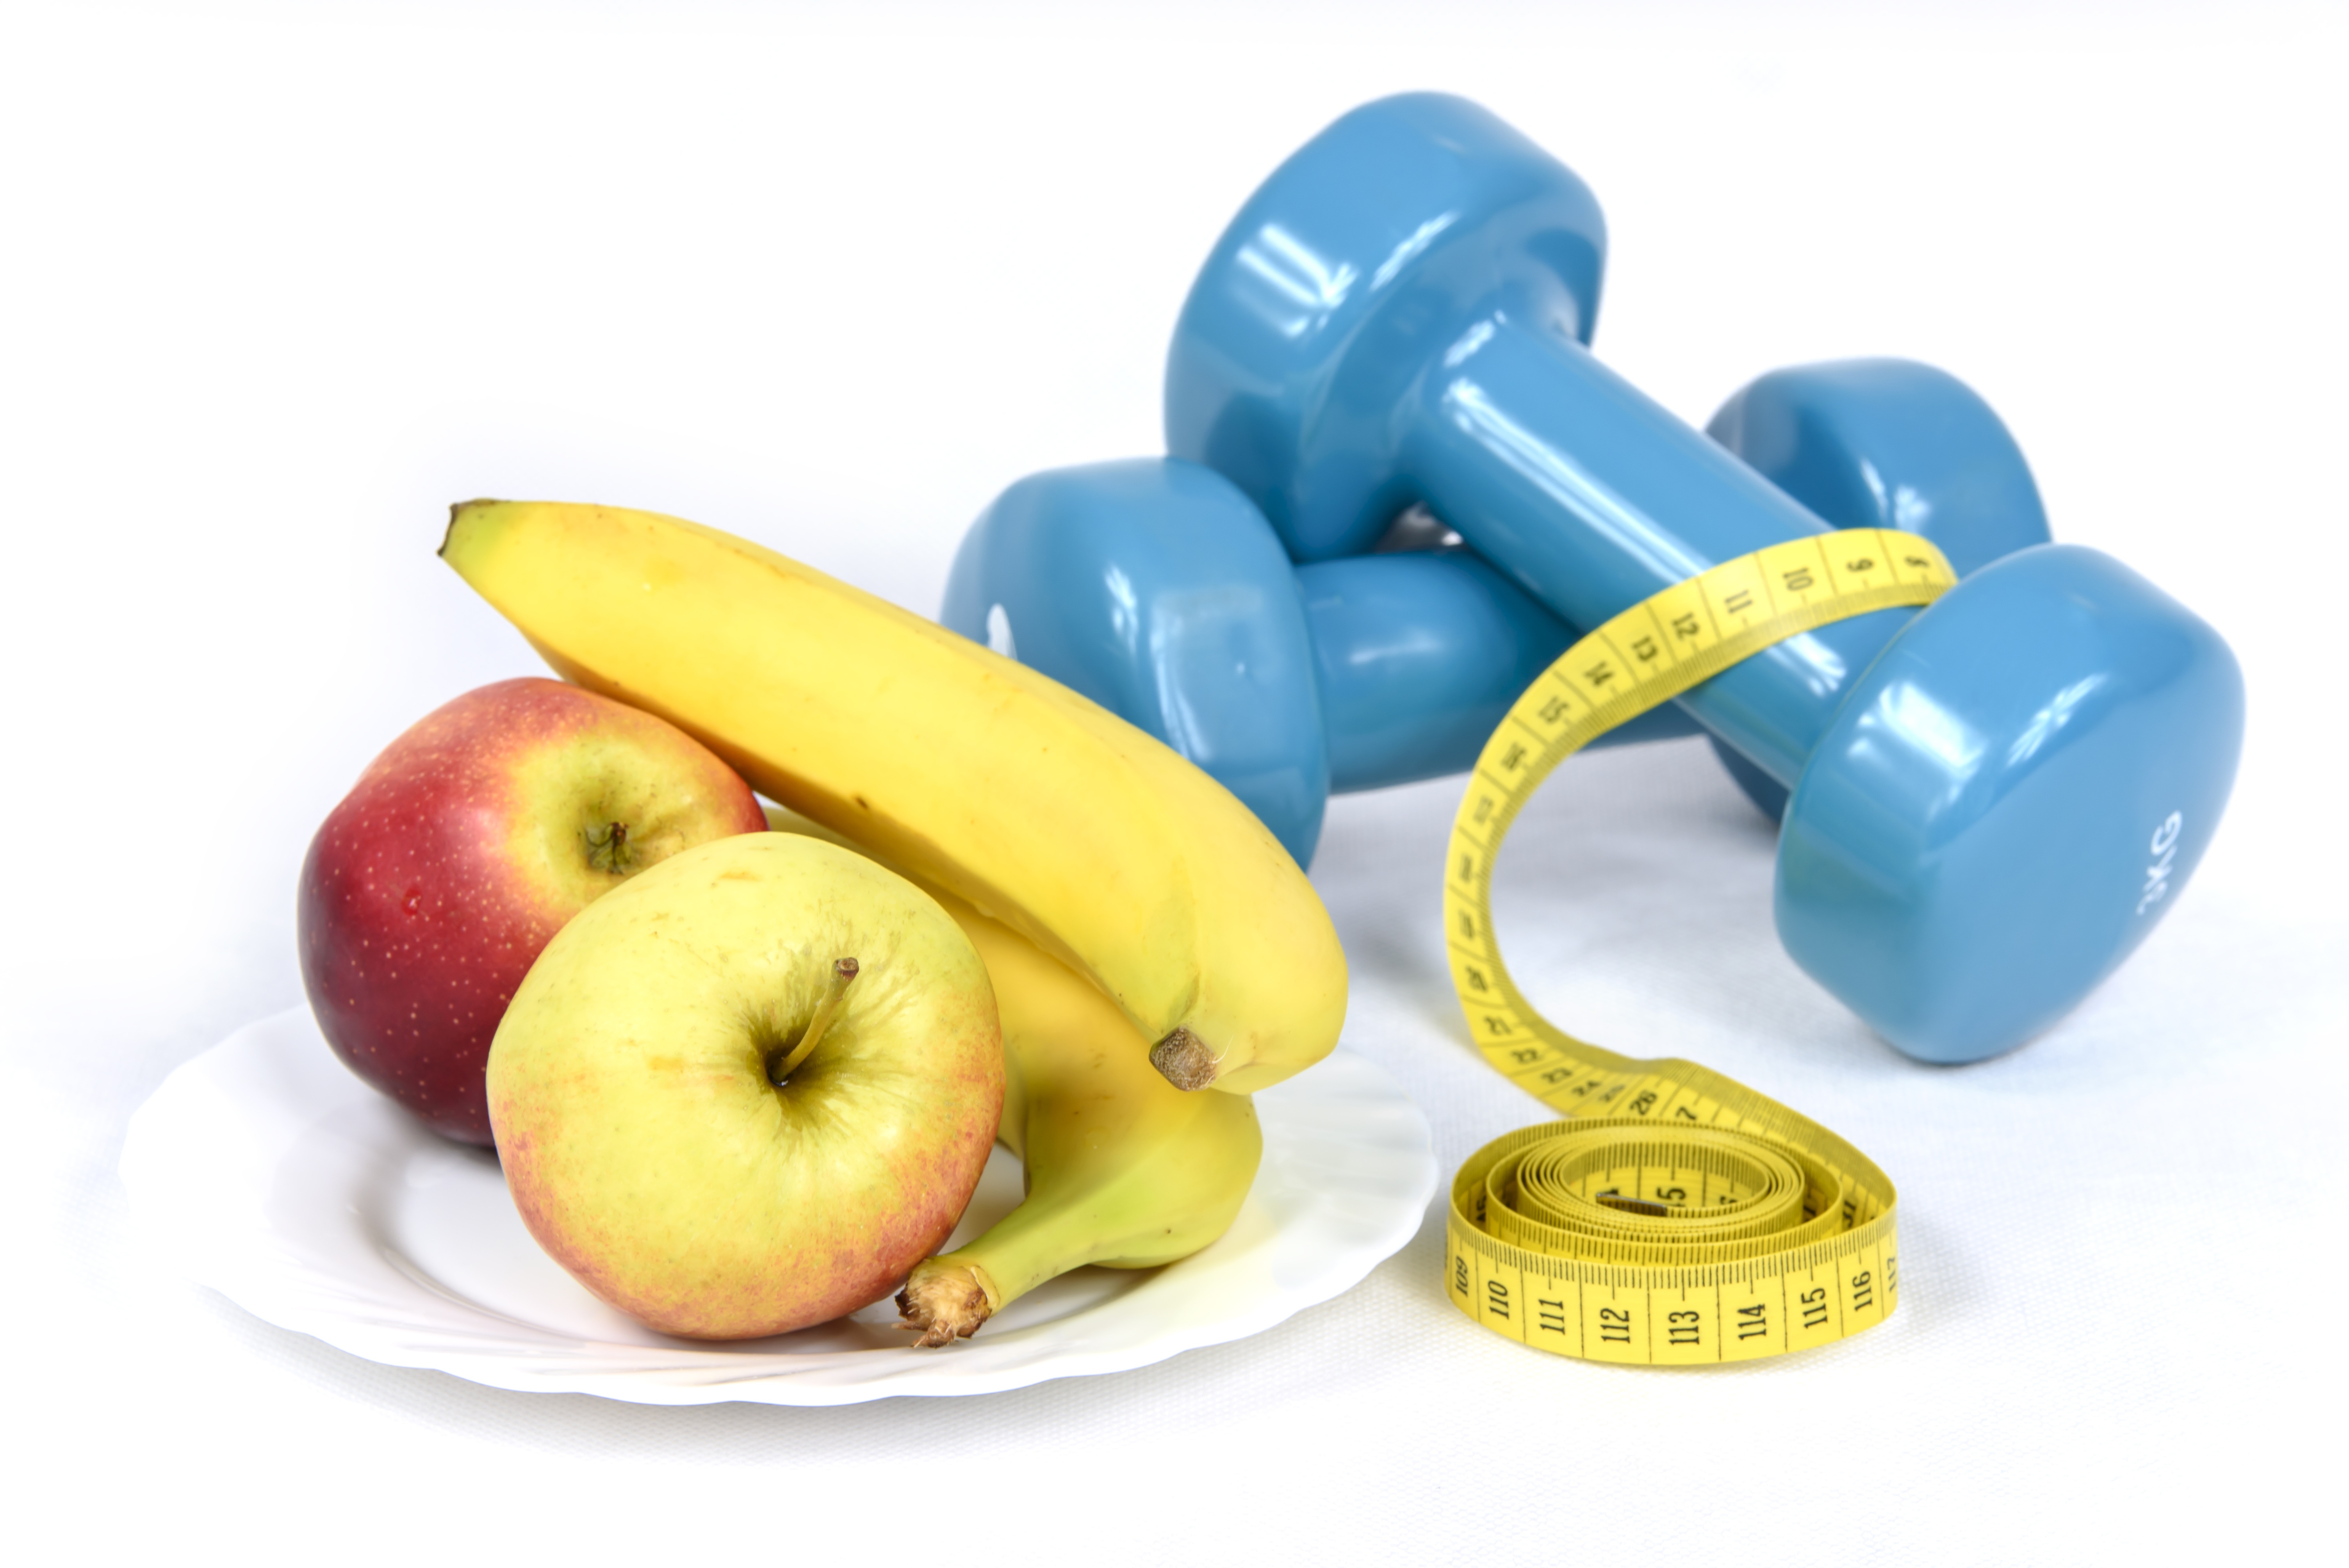 Diet way. Правильное питание и спорт. Гантели и фрукты. Здоровый образ жизни. Атрибуты ЗОЖ.